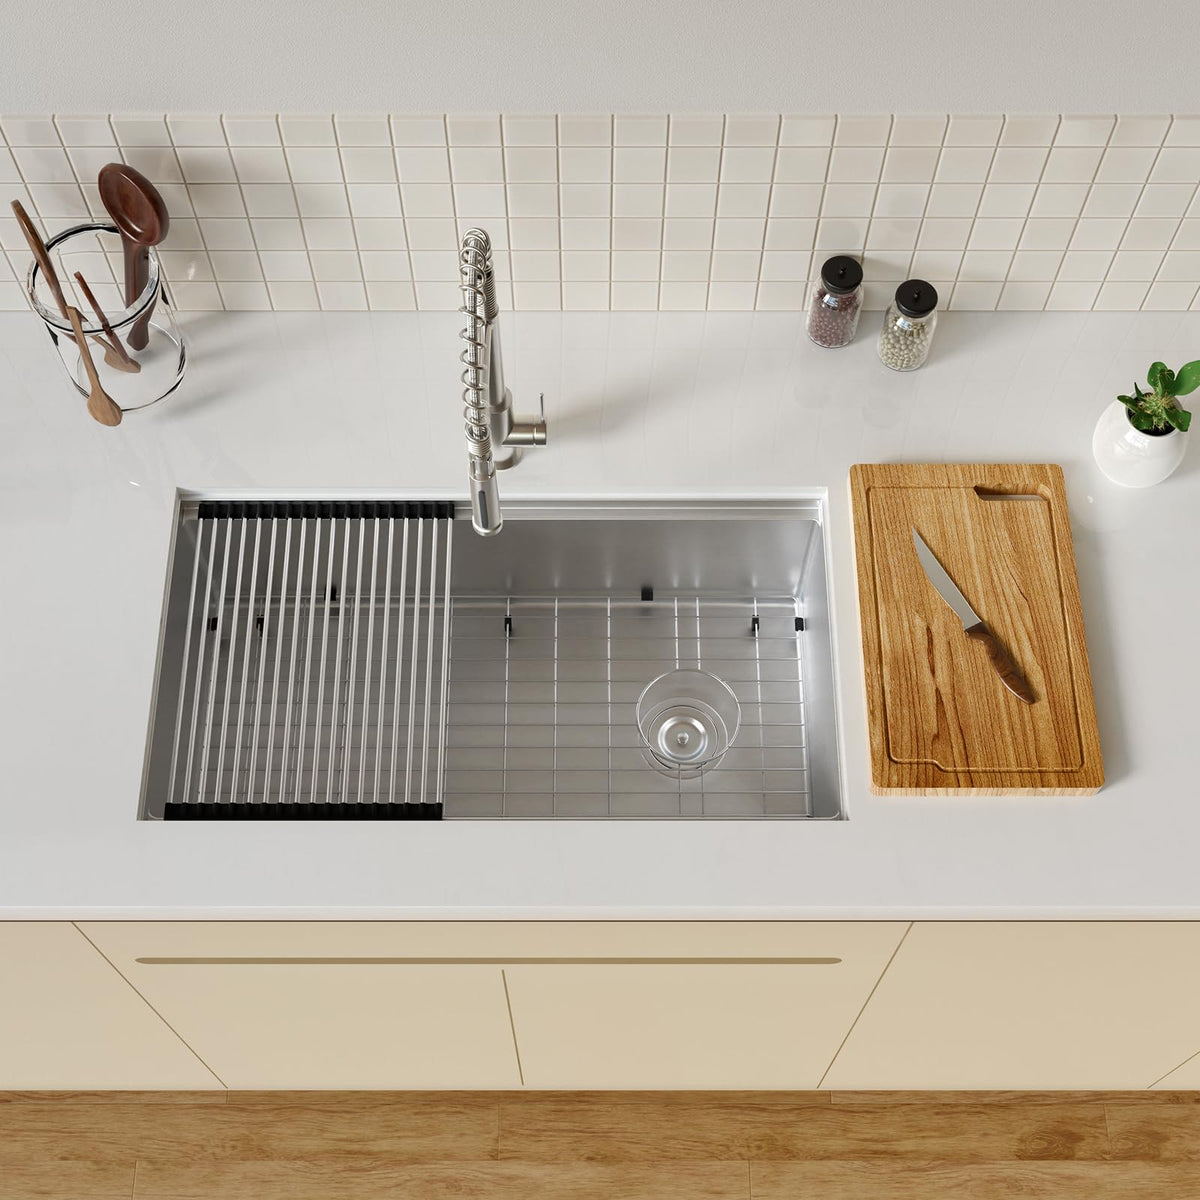 TECASA Undermount Deep Single Bowl—32 inch Workstation Kitchen Sink